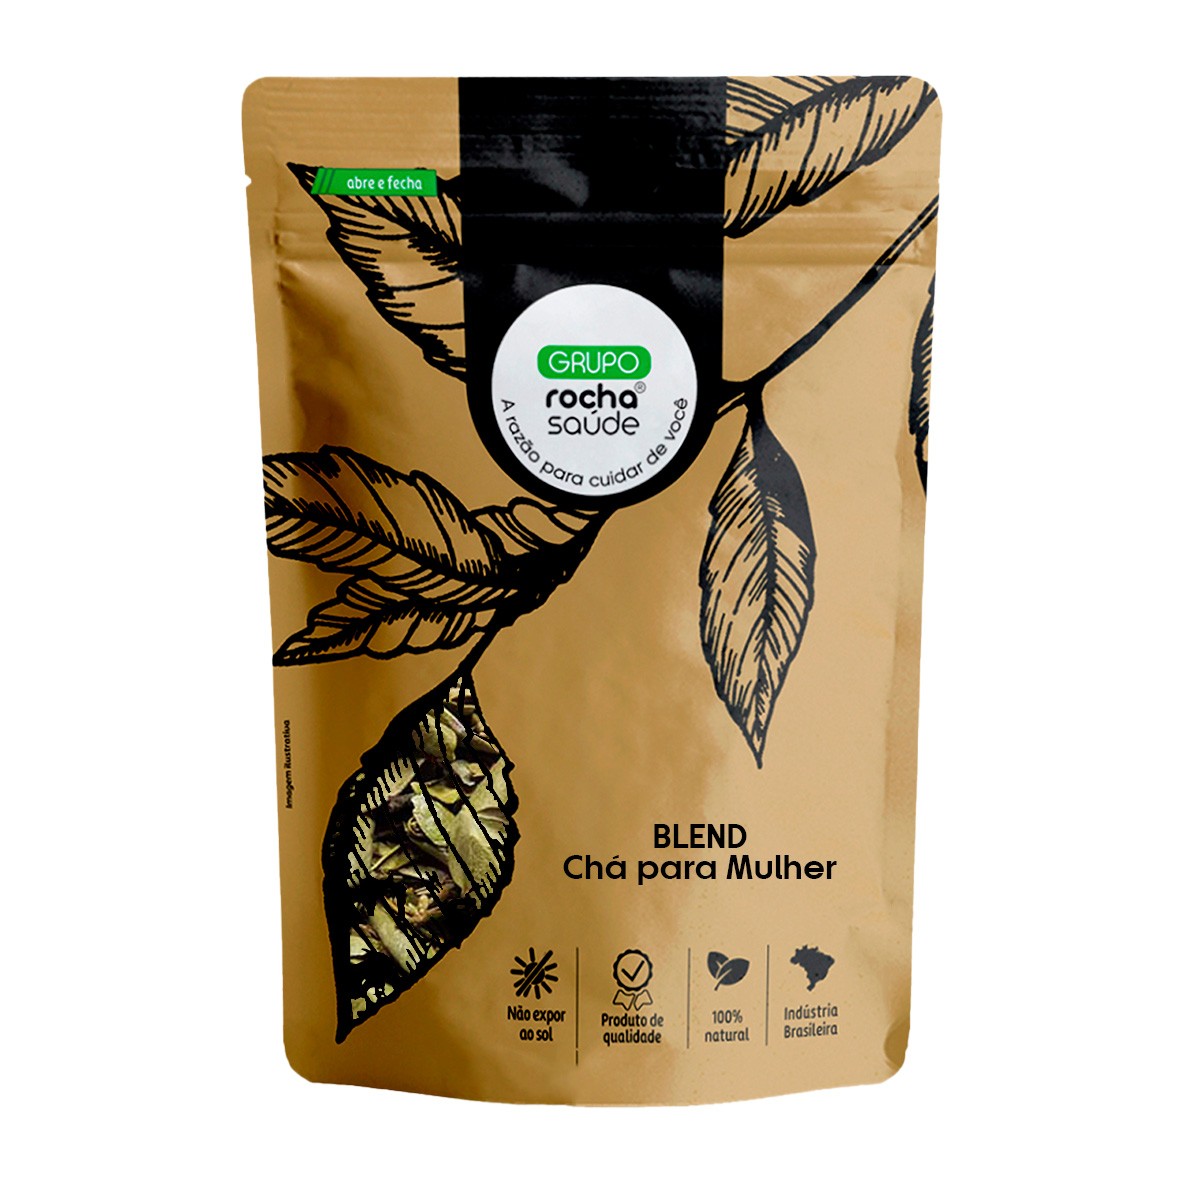 Blend - Chá para Mulher - 100% Natural - Alta Qualidade